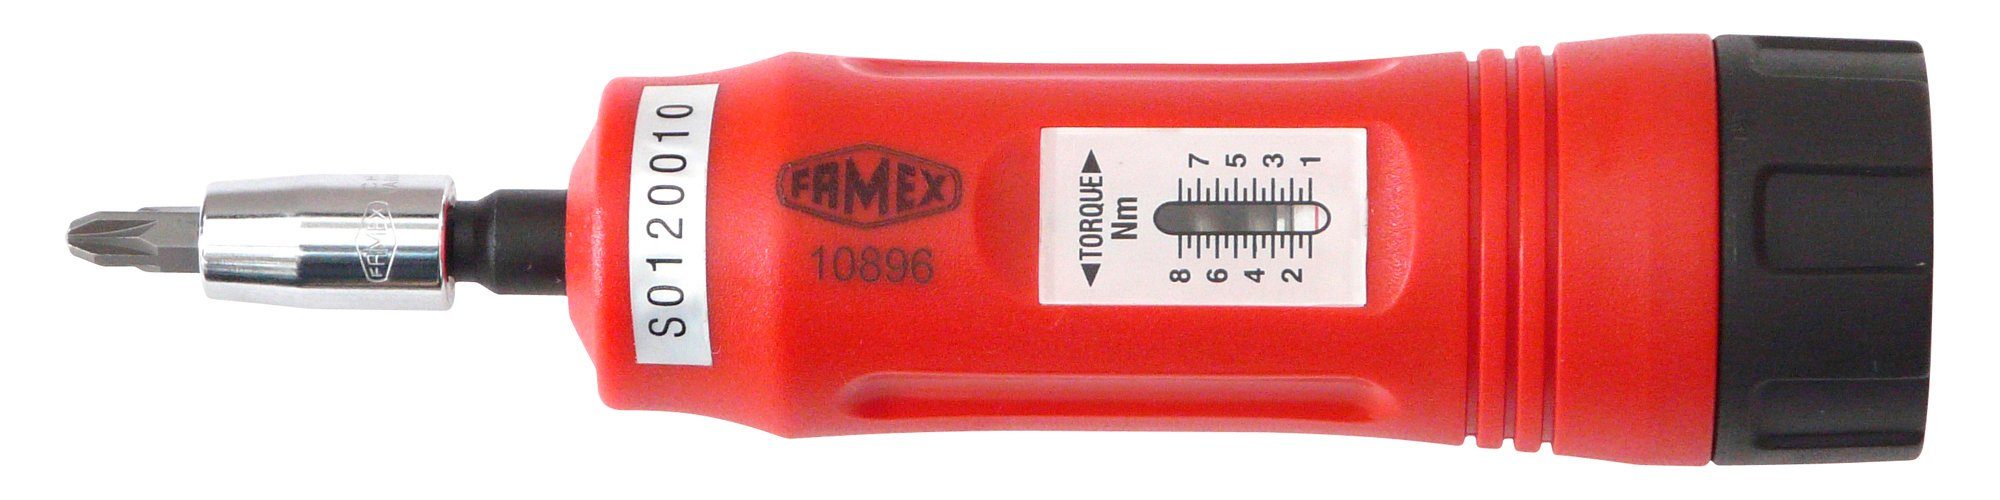 1-8 FAMEX Drehmomentschlüssel 10896, Nm